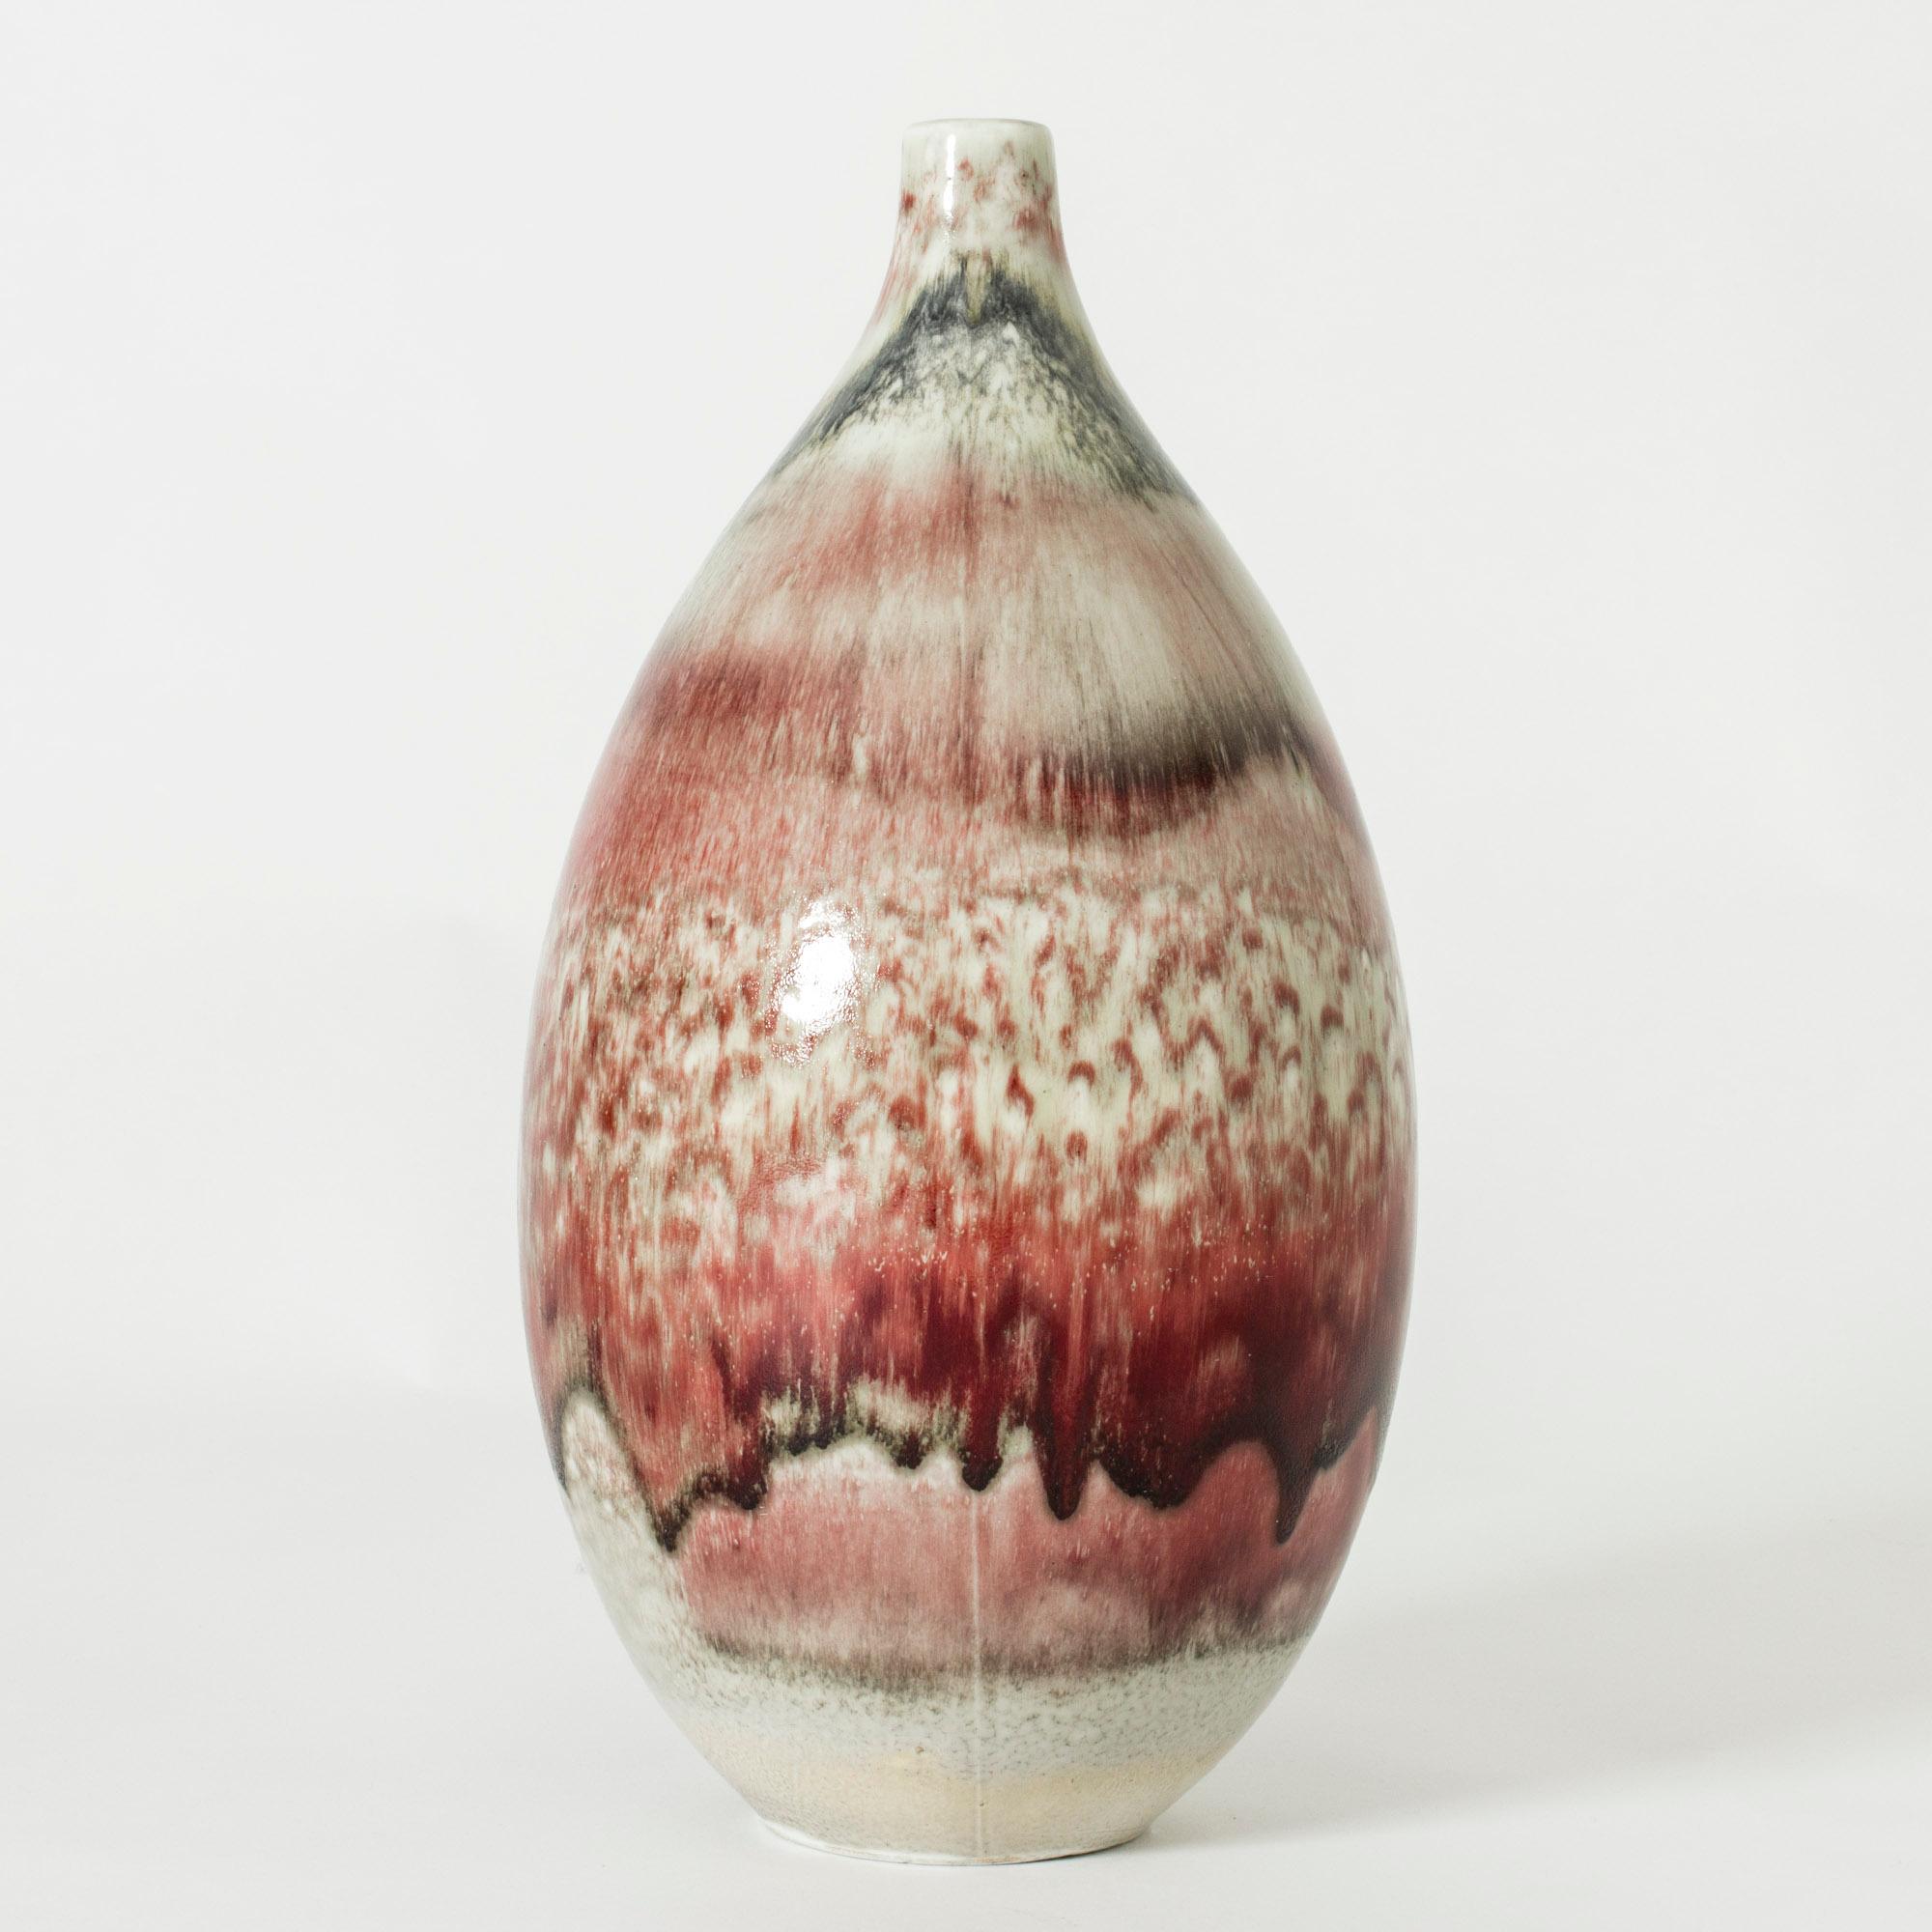 Vase en grès de Friedl Holzer-Kjellberg, grand et volumineux, émaillé d'une étonnante glaçure rouge sang de bœuf profonde. Belle variation de la glaçure autour du corps.